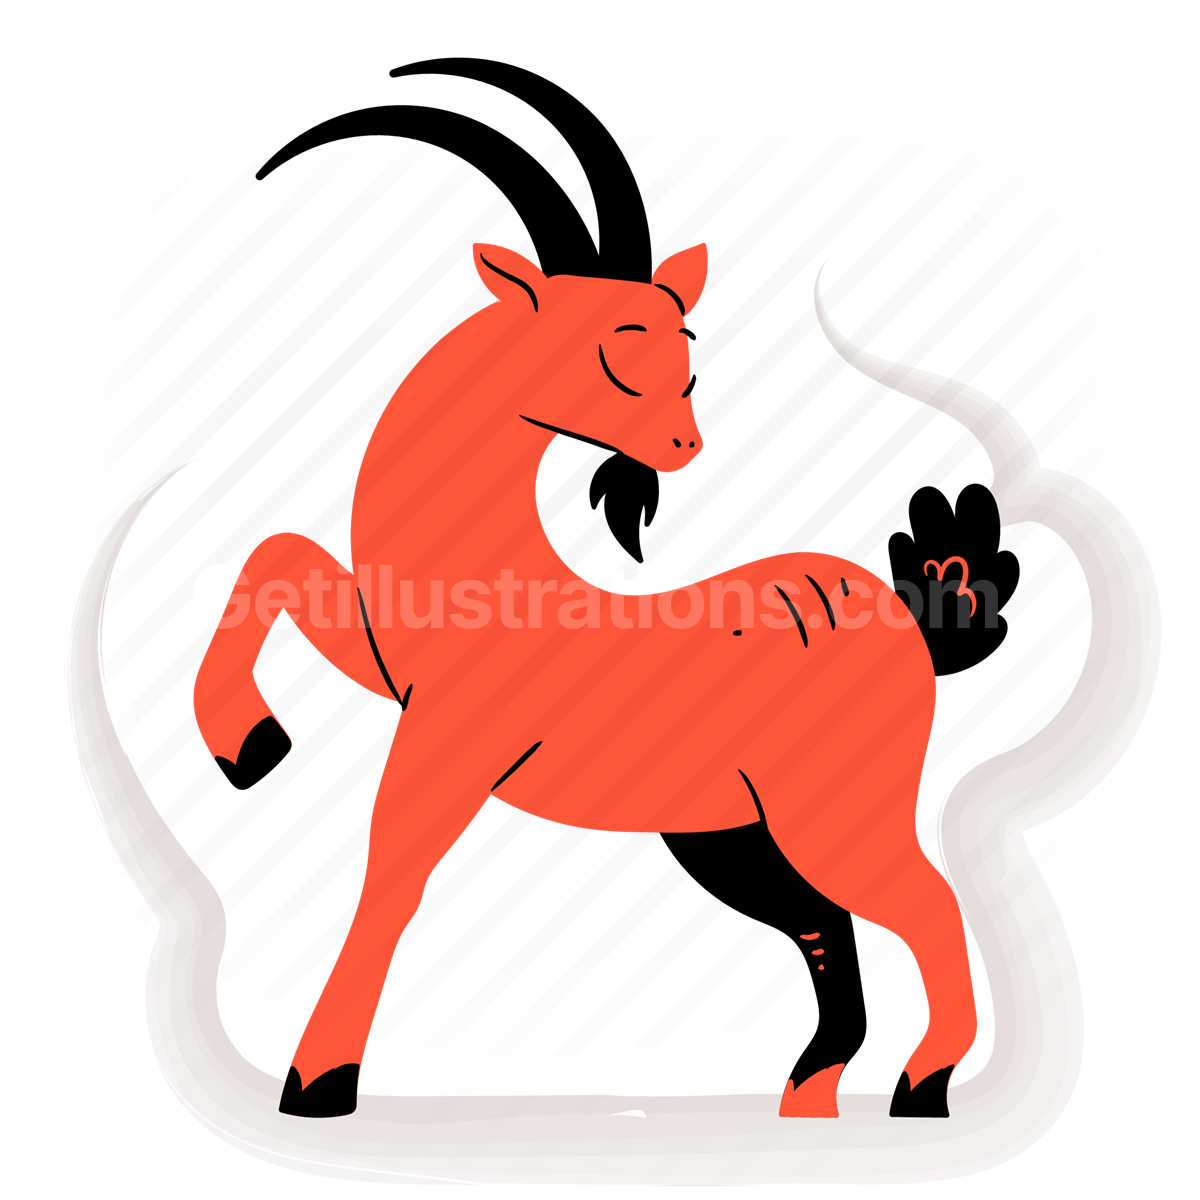 zodiac, horoscope, horoscopes, astrology, symbols, chinese, goat